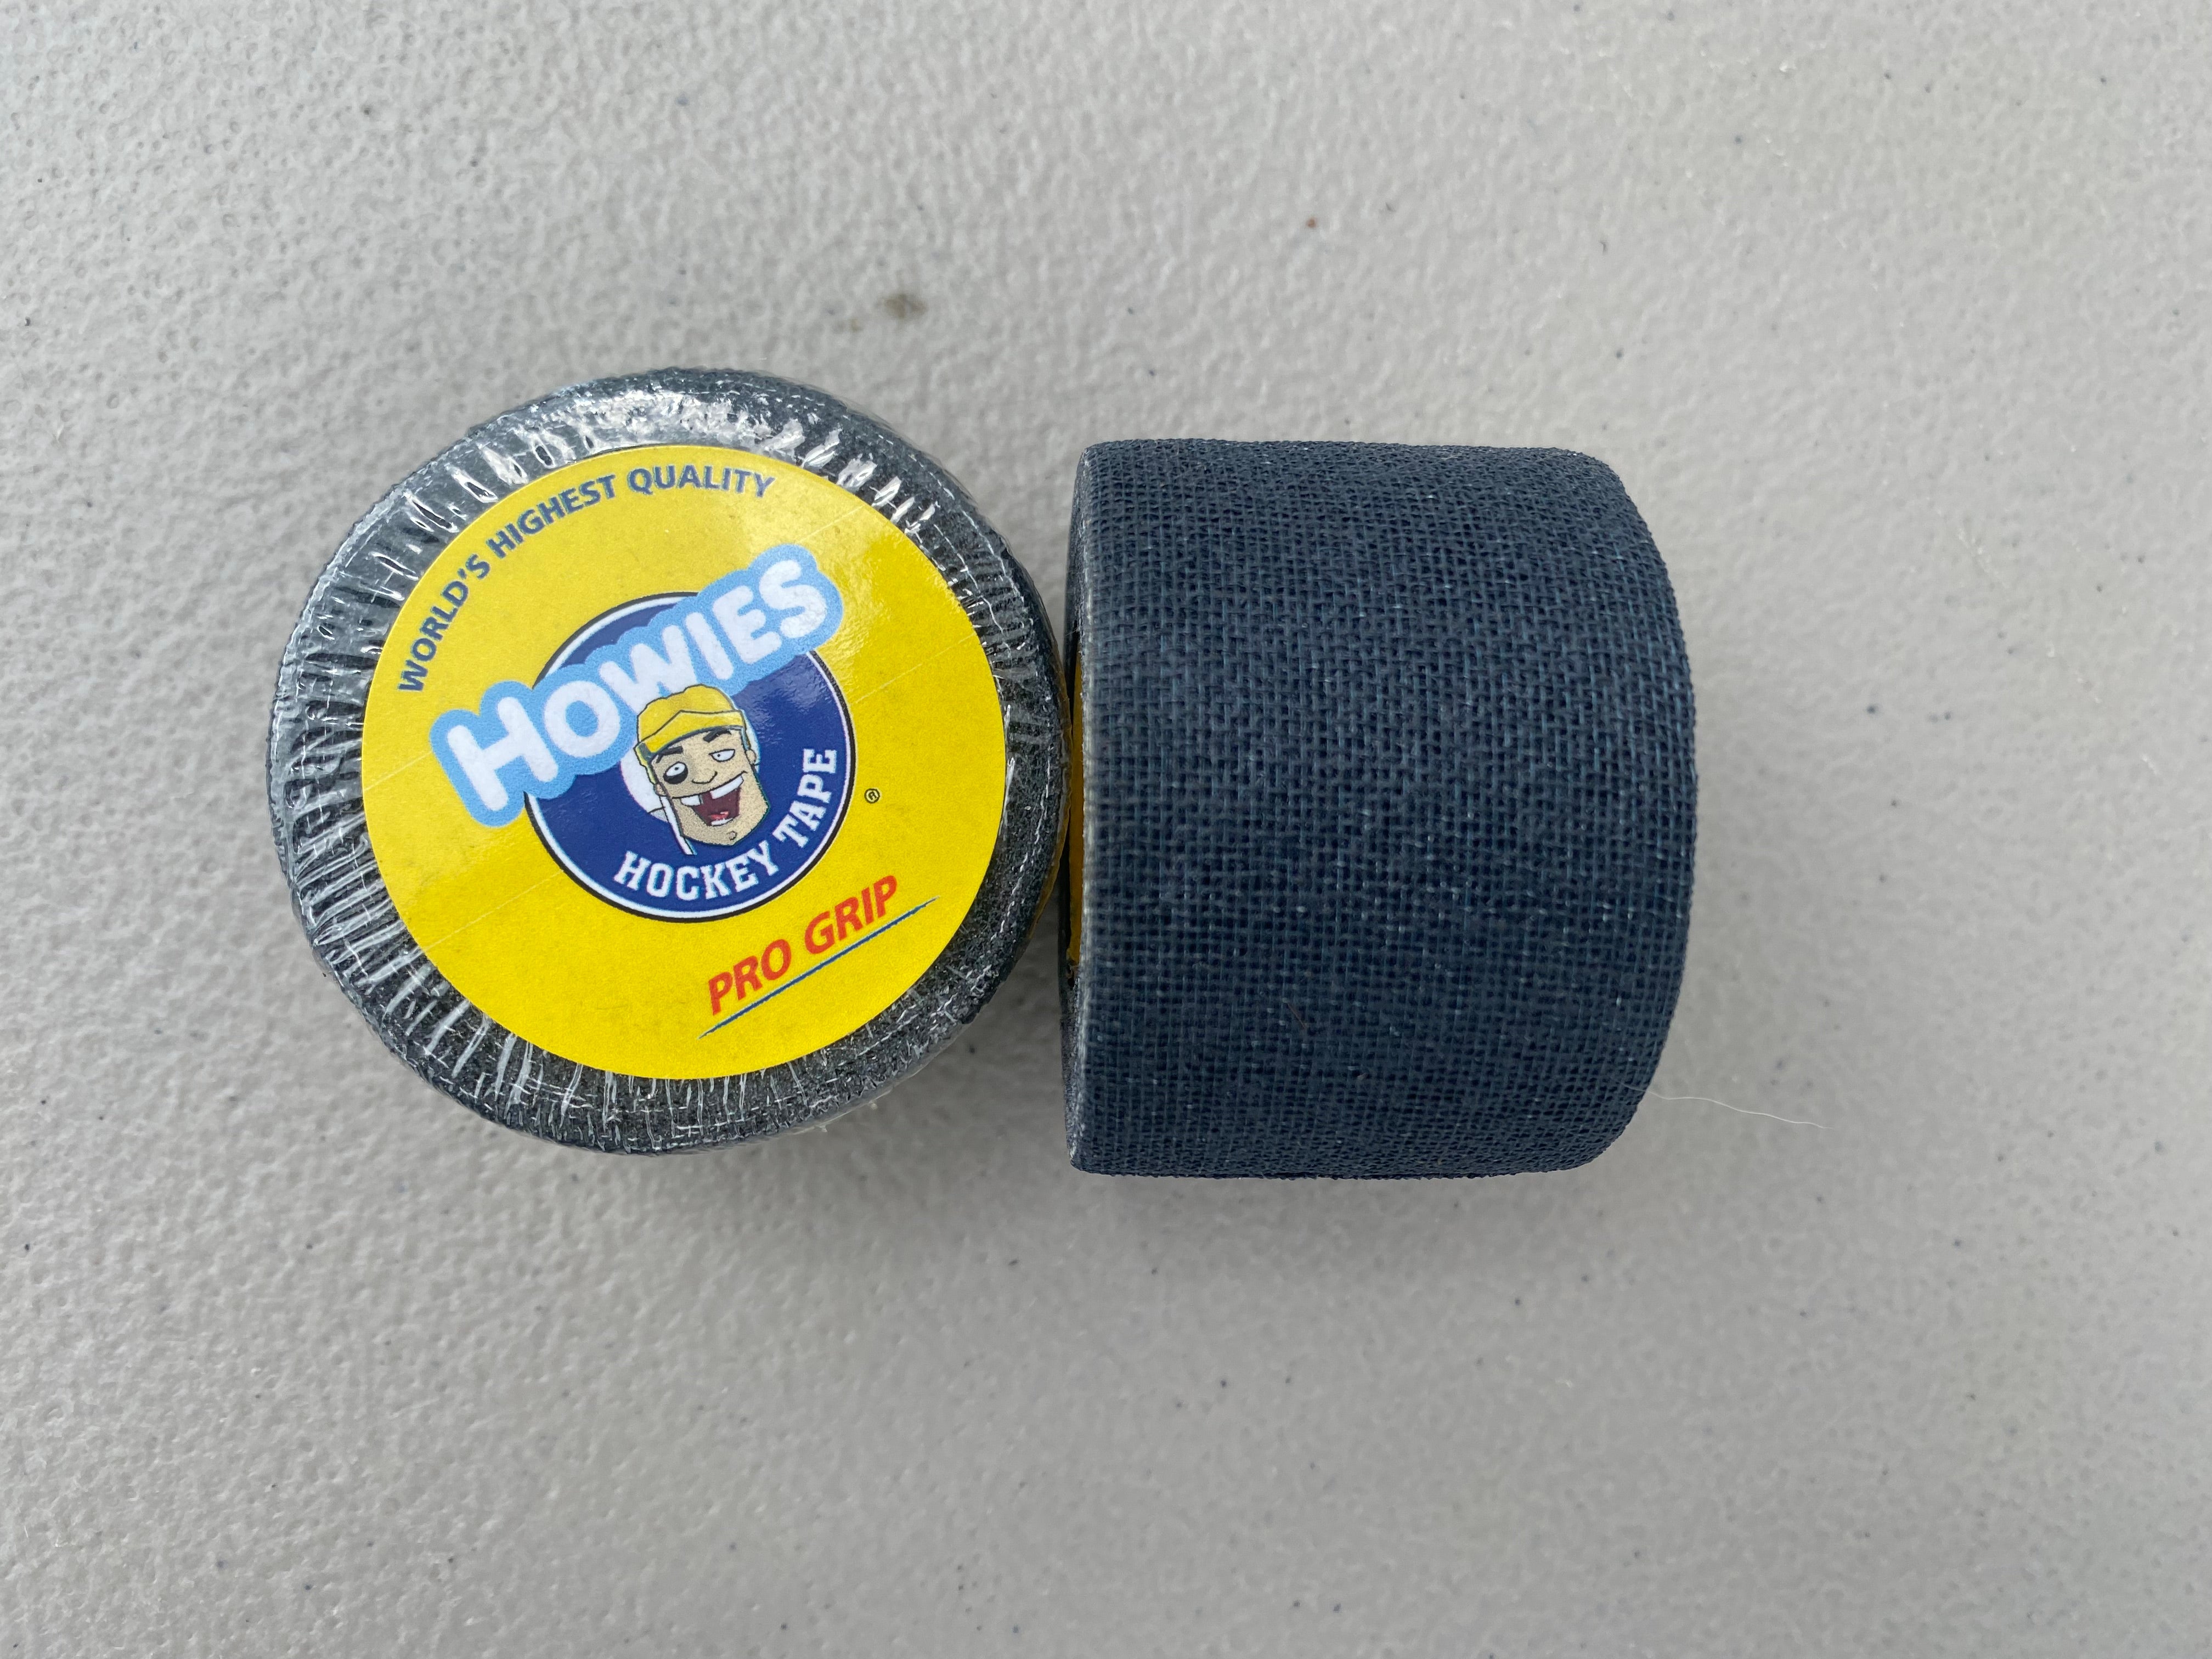 2 Rolls of Black Hockey Gauze Grip Tape Pro Quality 1.5" x 30' 